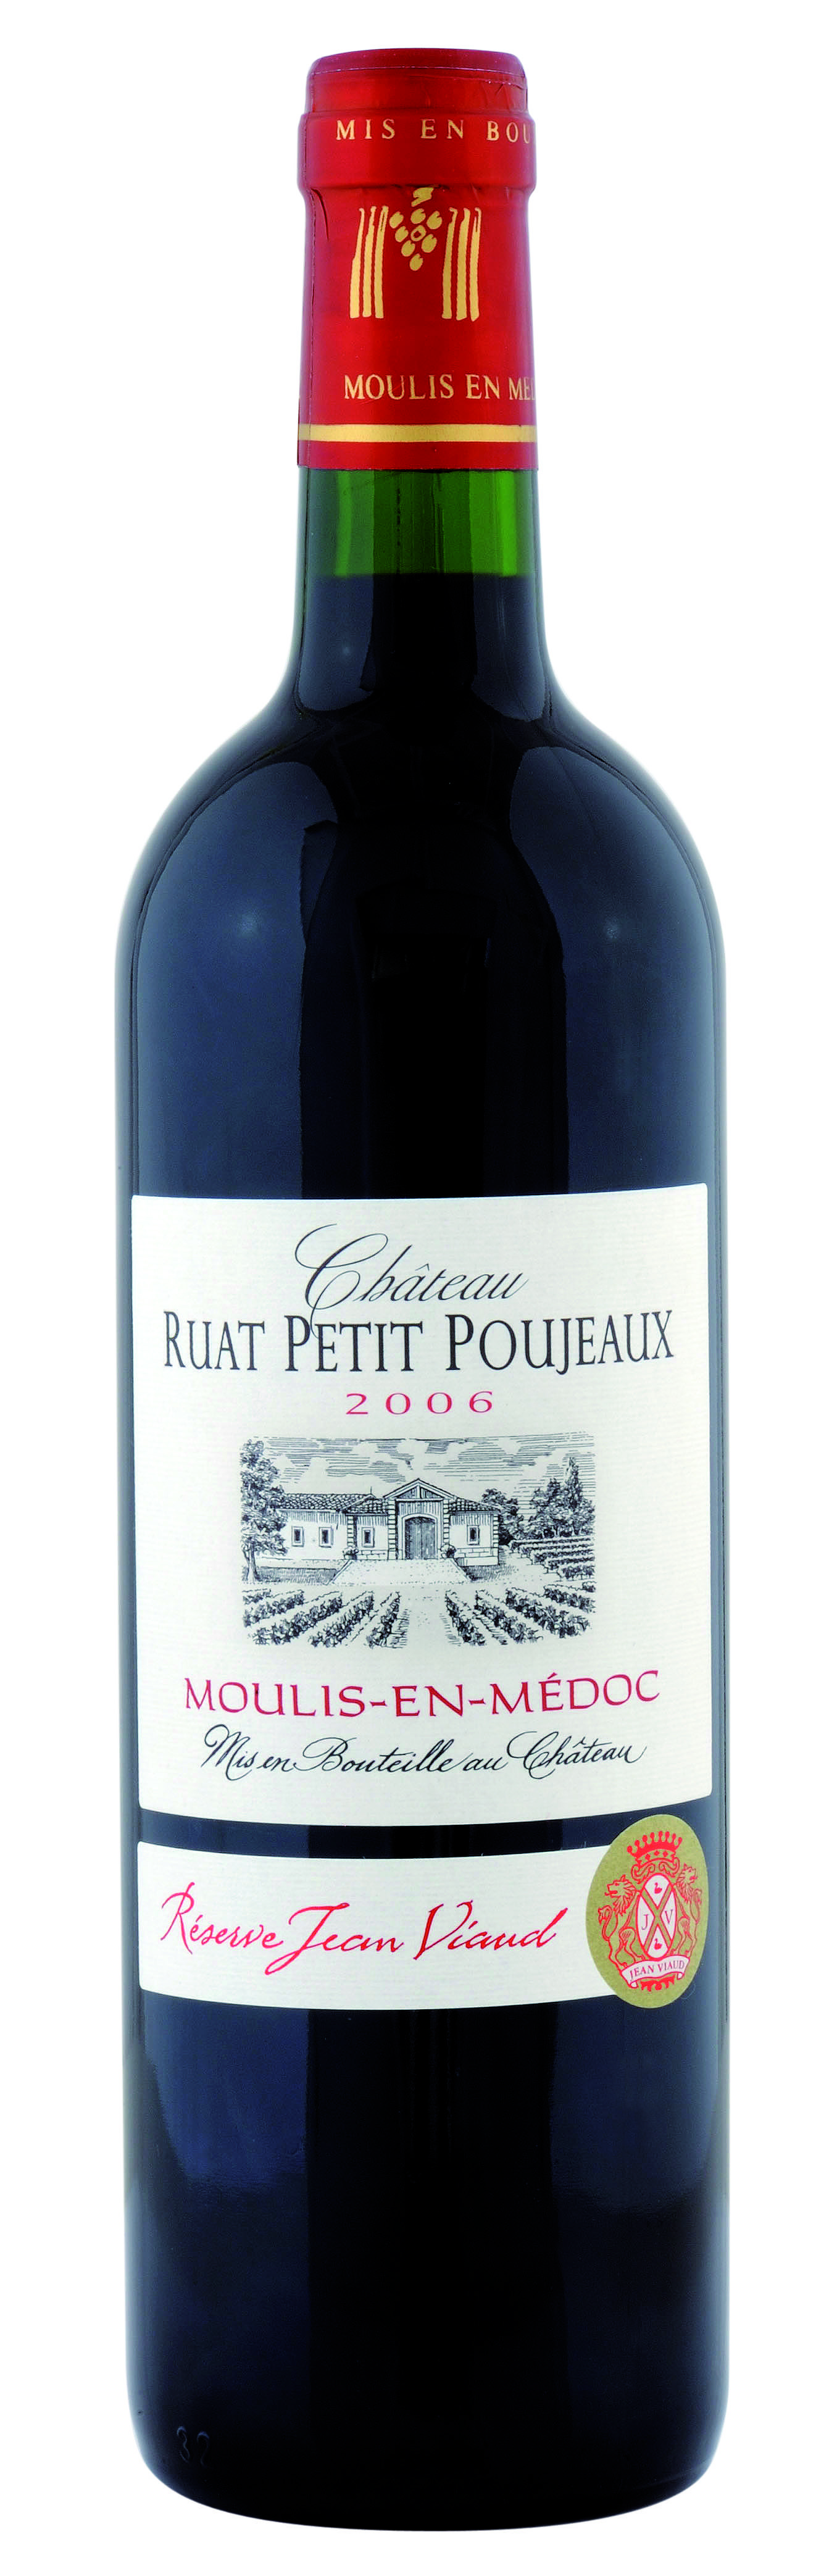 Château Ruat Petit Poujeaux - Bouteille (2006 Jean Viaud)